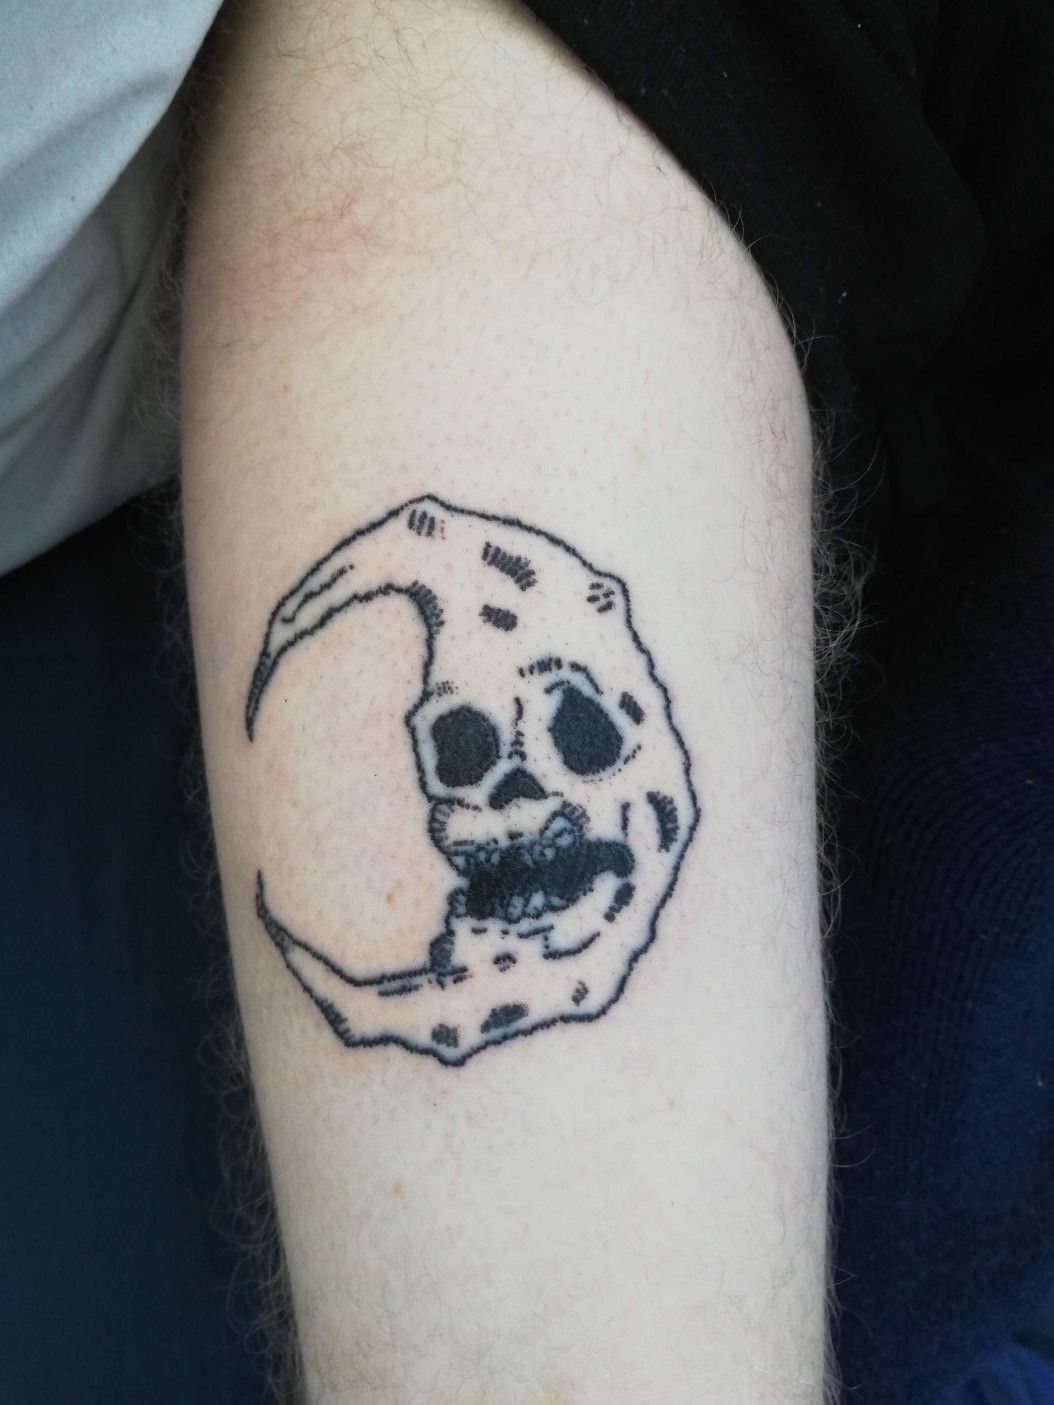 Bad moon tattoo